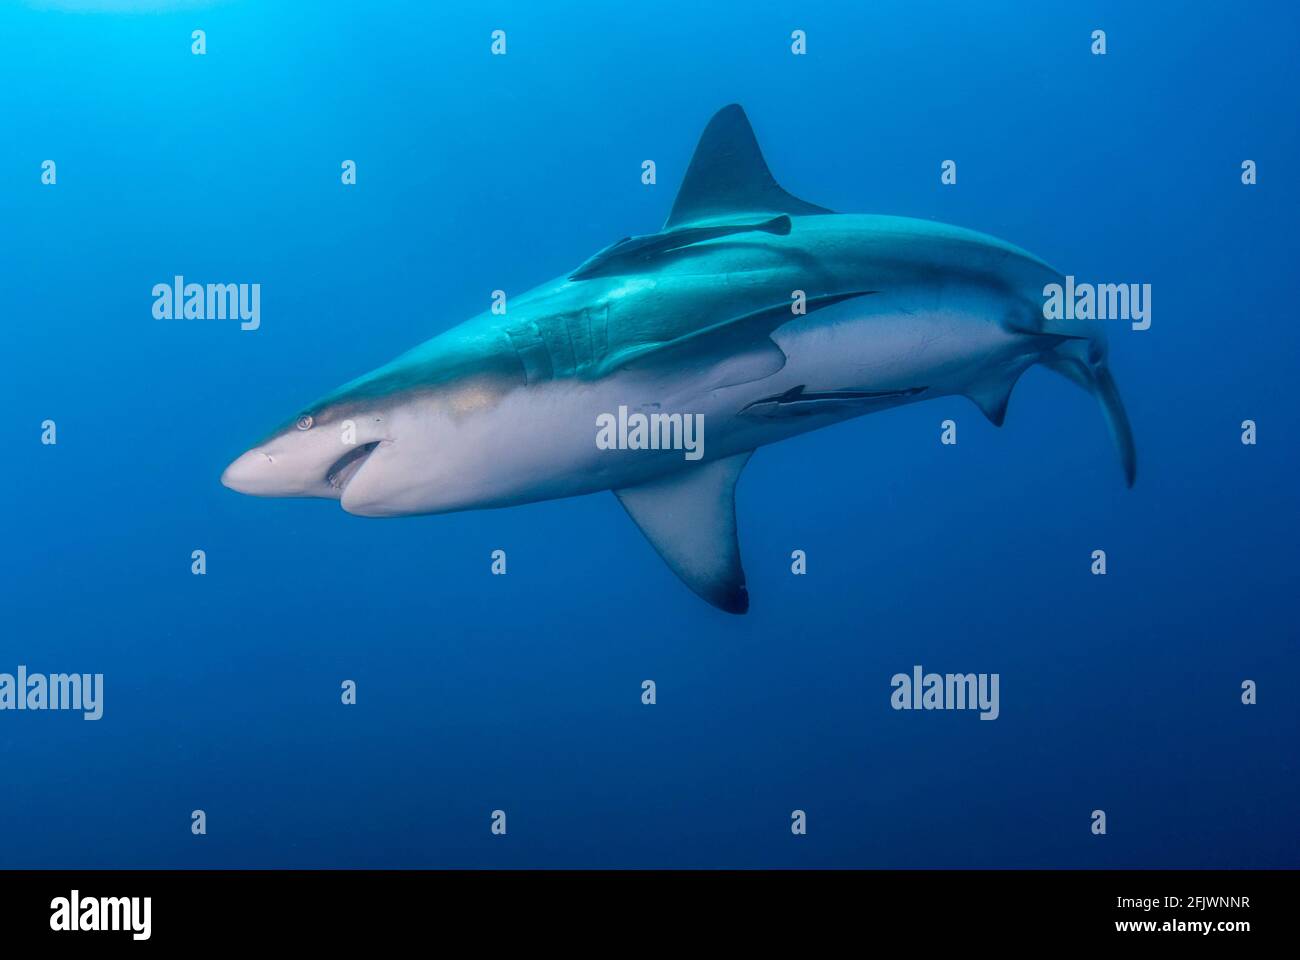 Requin océanique à pointe noire nageant dans le bleu Banque D'Images